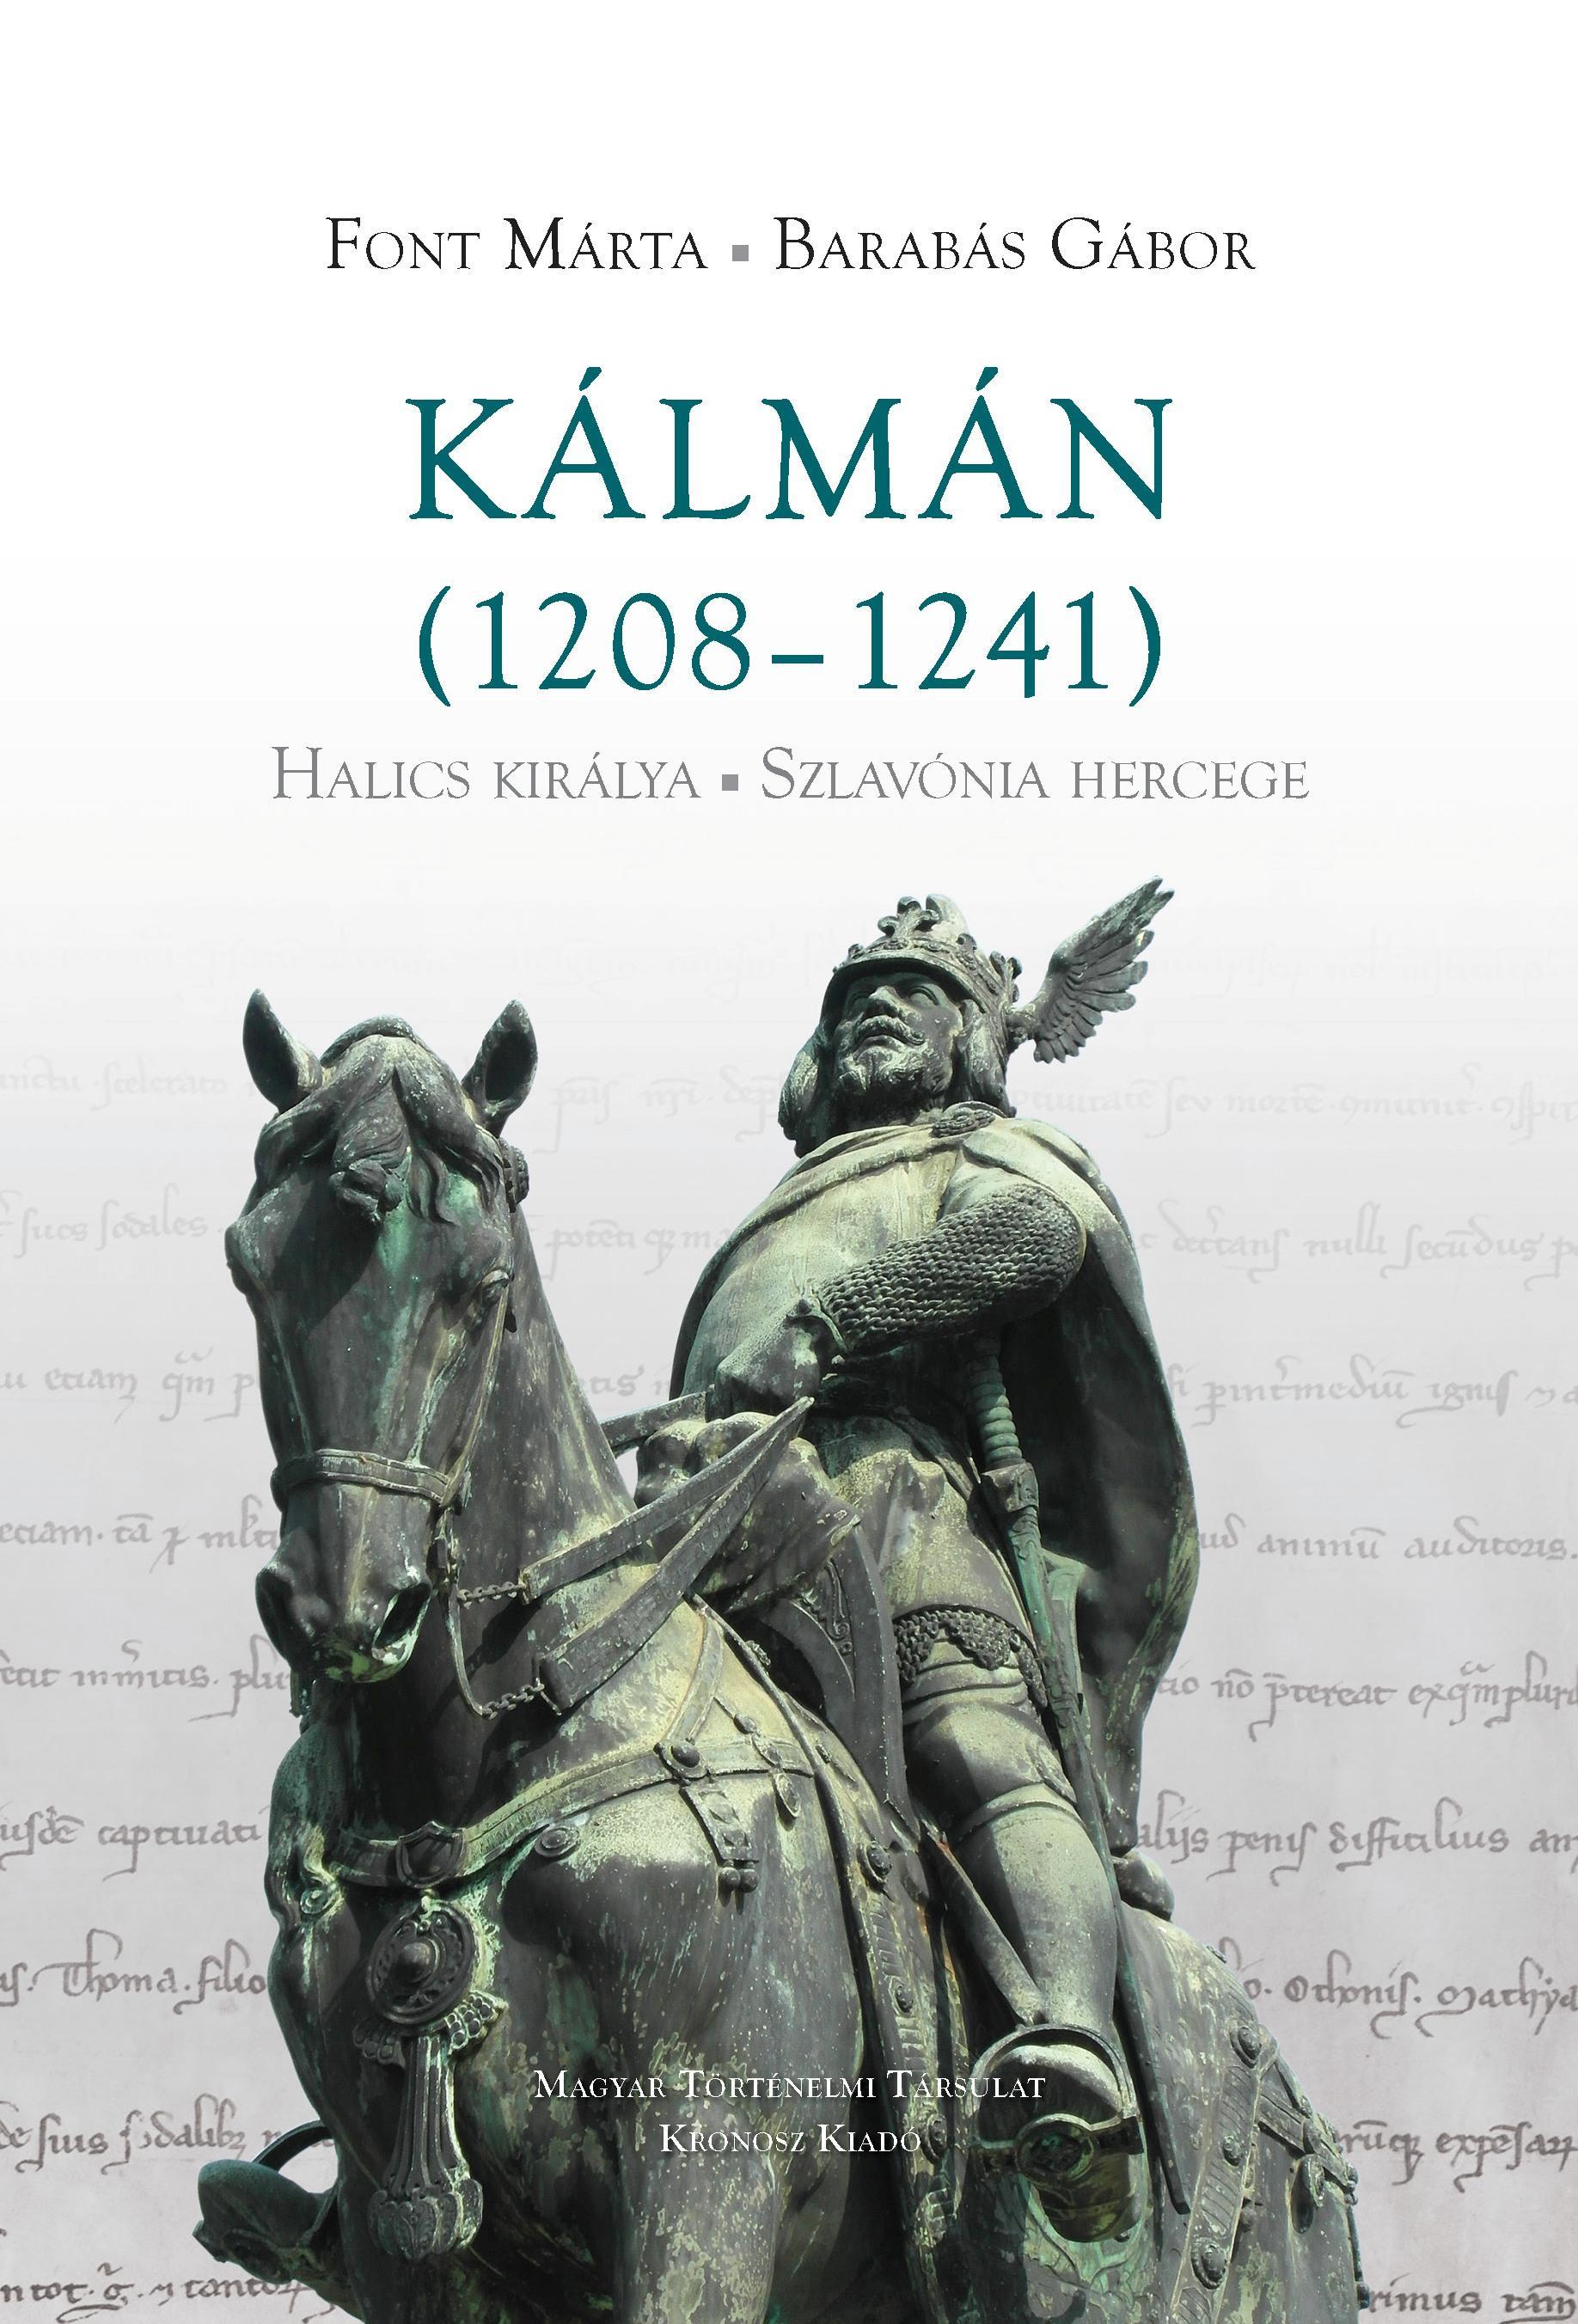 KÁLMÁN (1208-1241) HALICS KIRÁLYA, SZLAVÓNIA HERCEGE